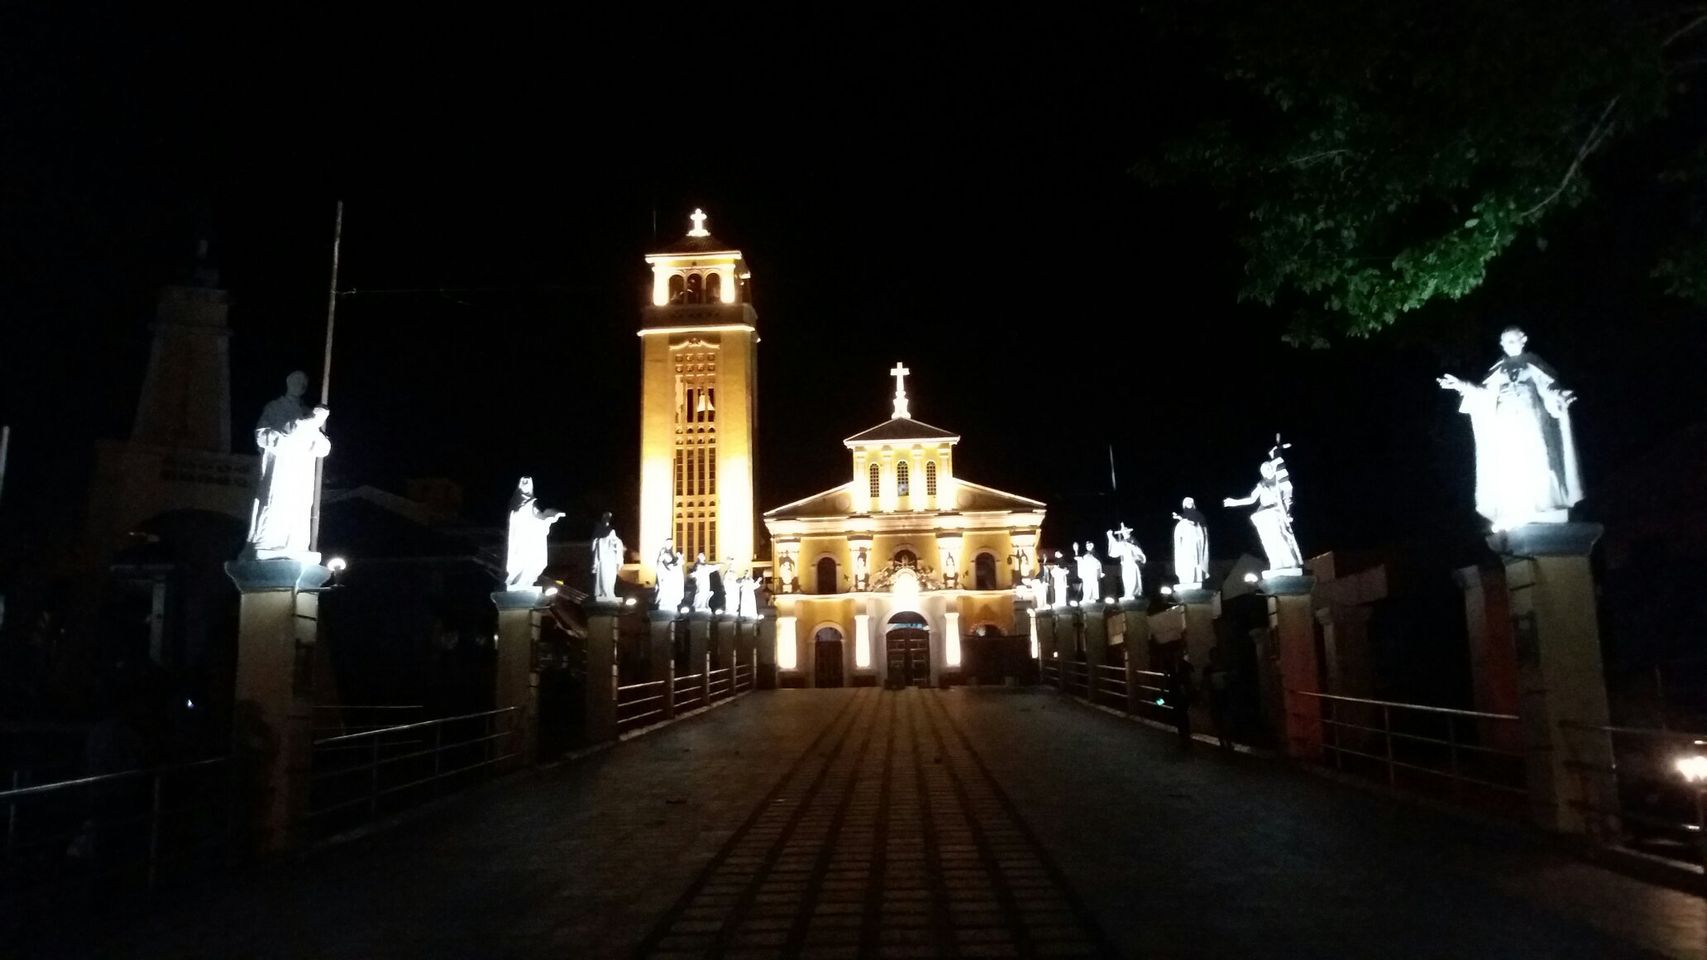 ¡Presentando la majestuosa belleza de la Catedral Basílica de Manizales – un refugio espiritual!